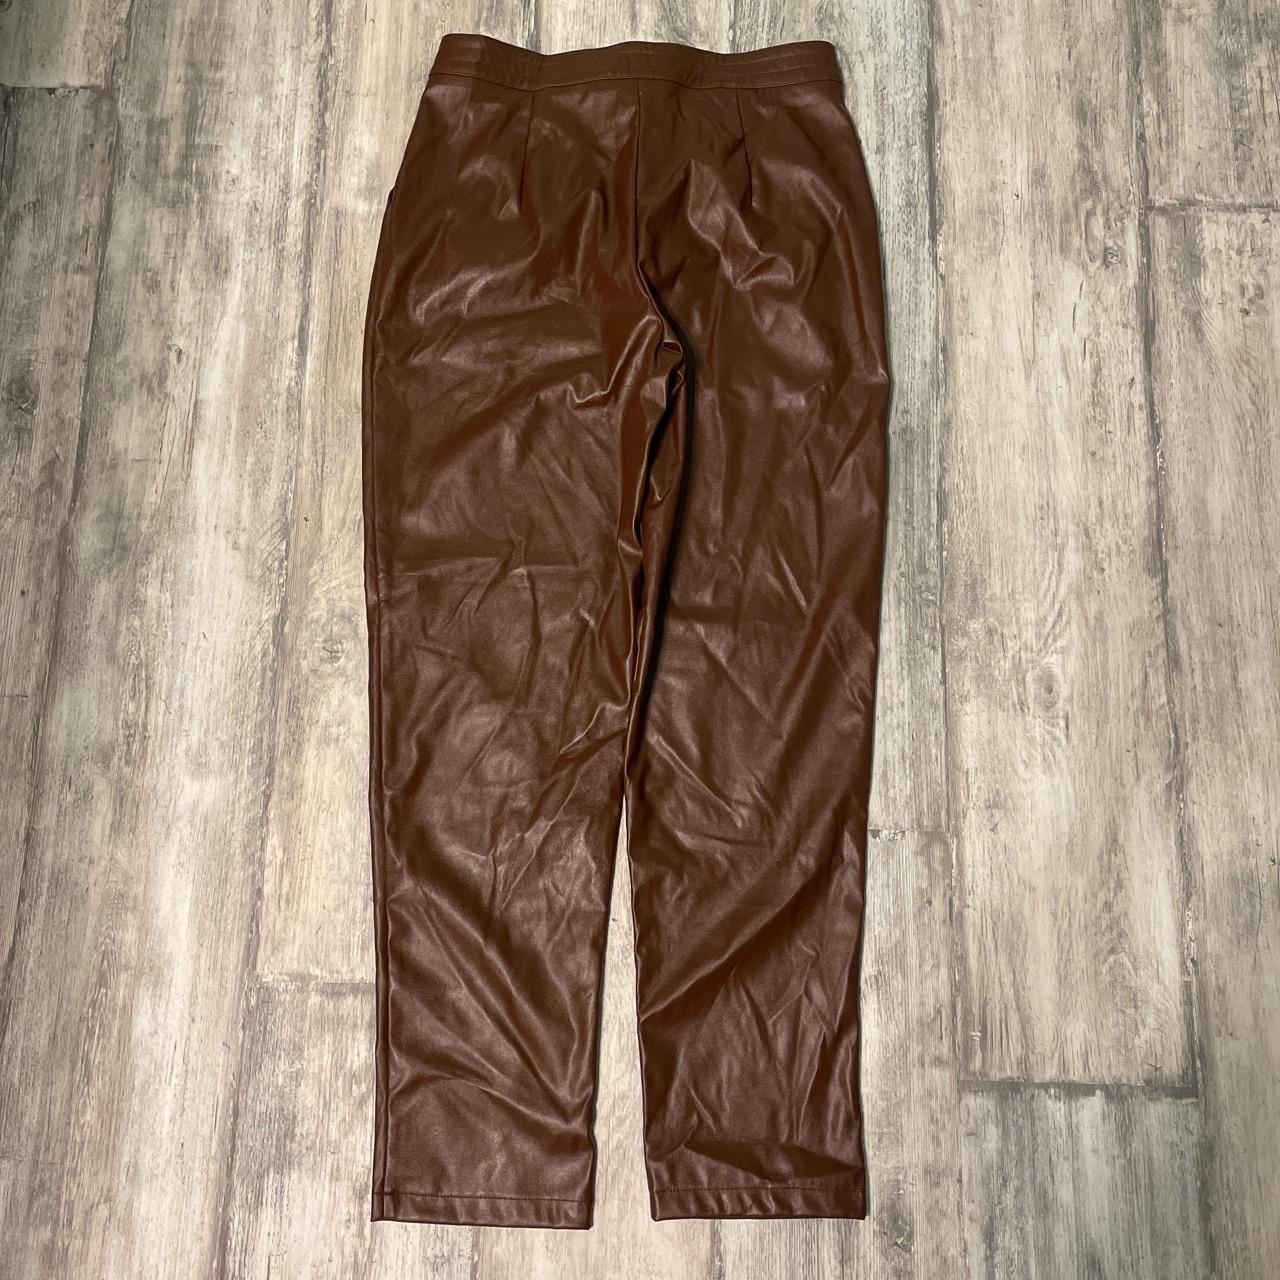 leather pants brand: Princess Polly size: 8 DEPOP... - Depop